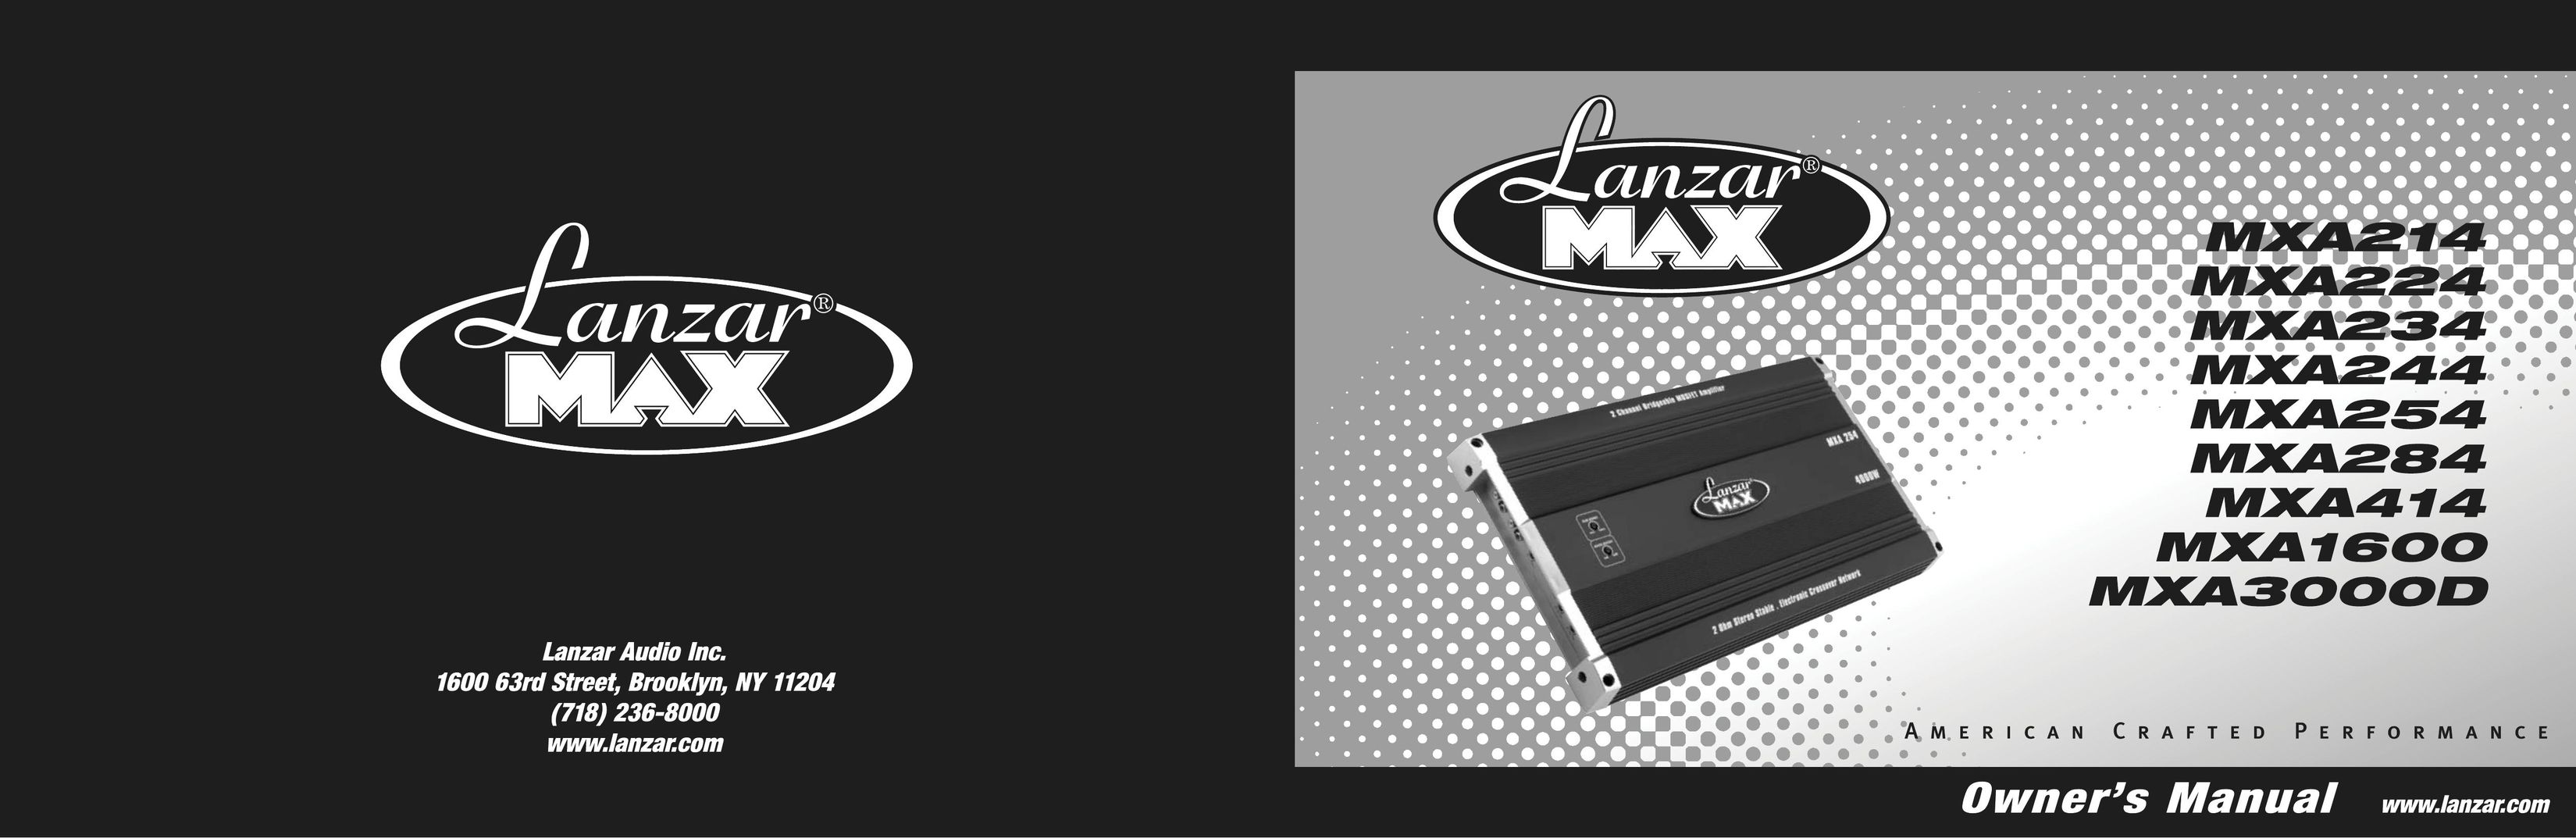 Lanzar Car Audio MXA224 Car Amplifier User Manual